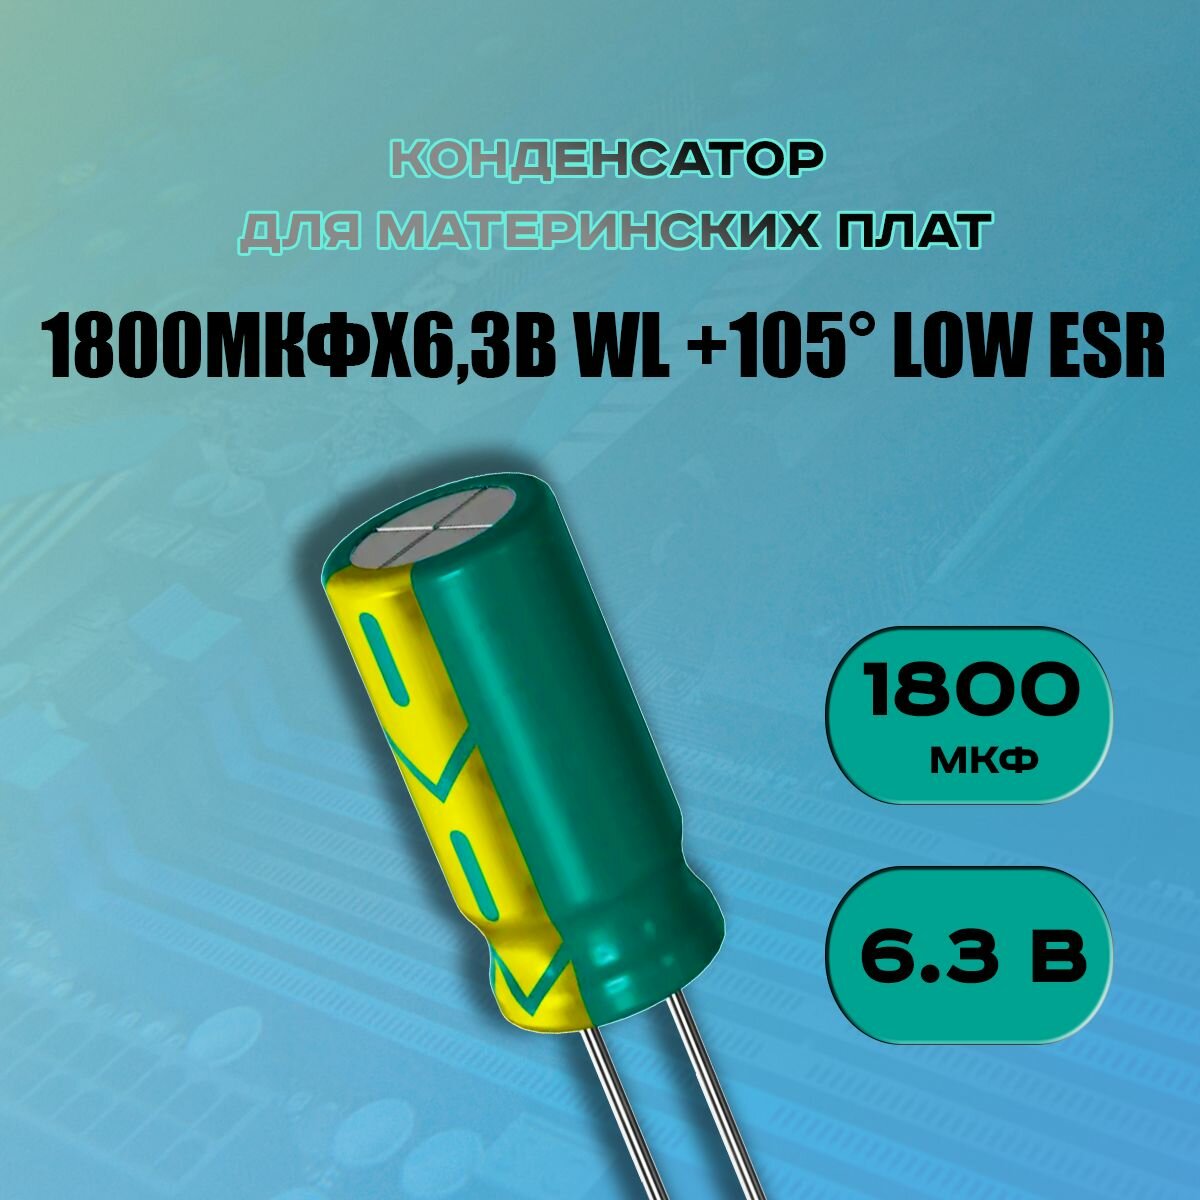 Конденсатор для материнской платы 1800 микрофарат 6.3 Вольт (1800uf 6.3V WL +105 LOW ESR) - 1 шт.